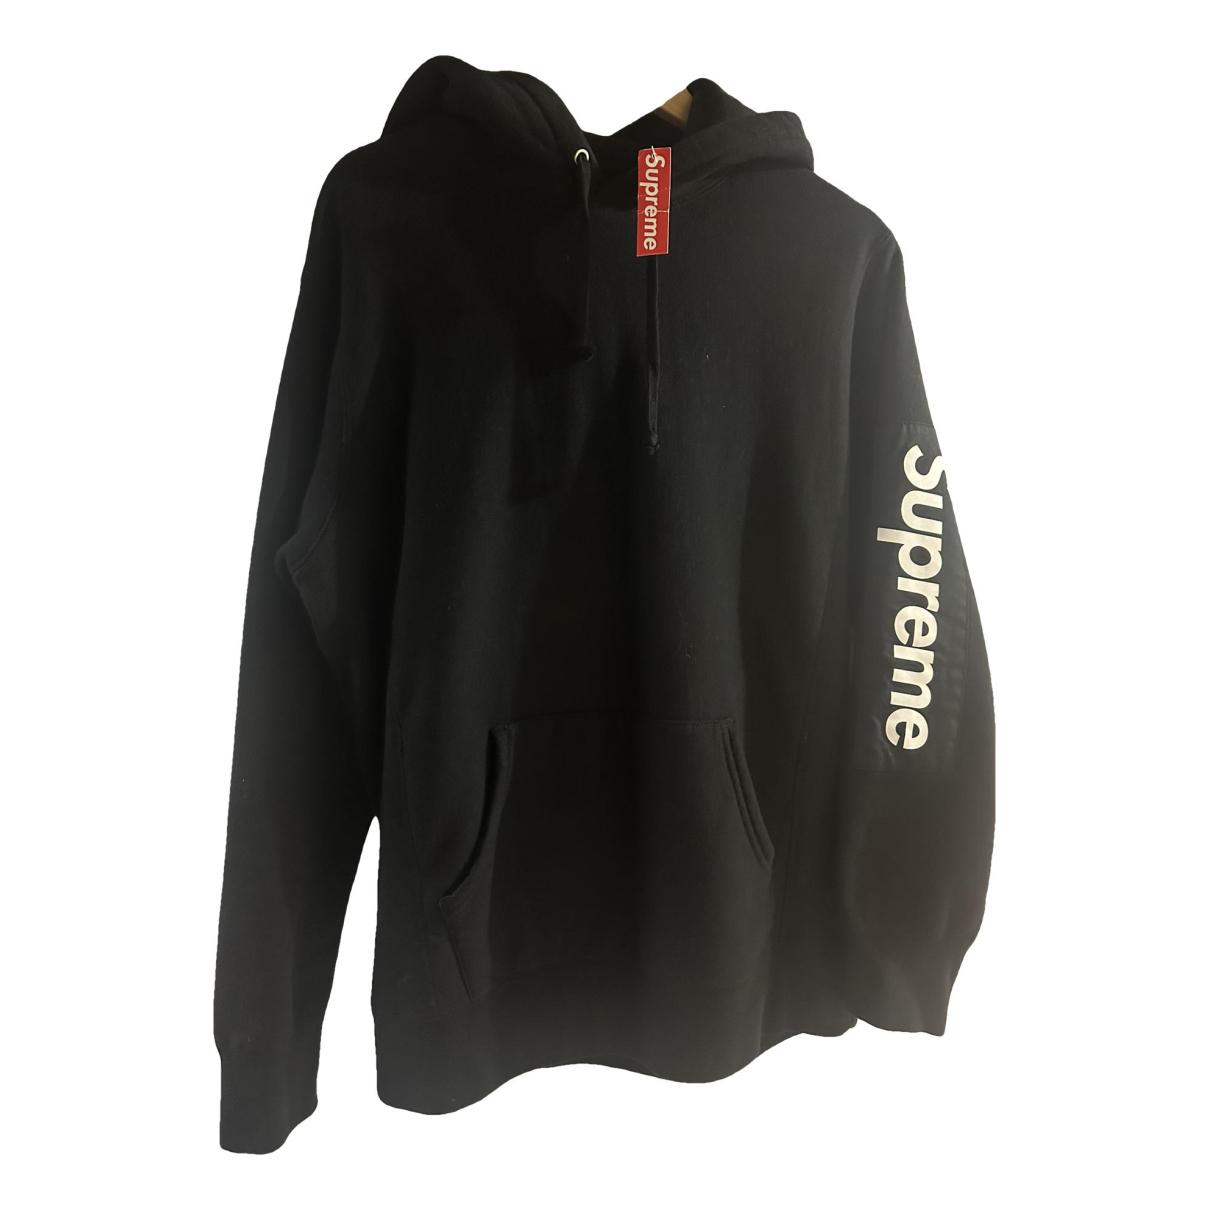 Sweatshirt Supreme Black size M International in Cotton - 36766610